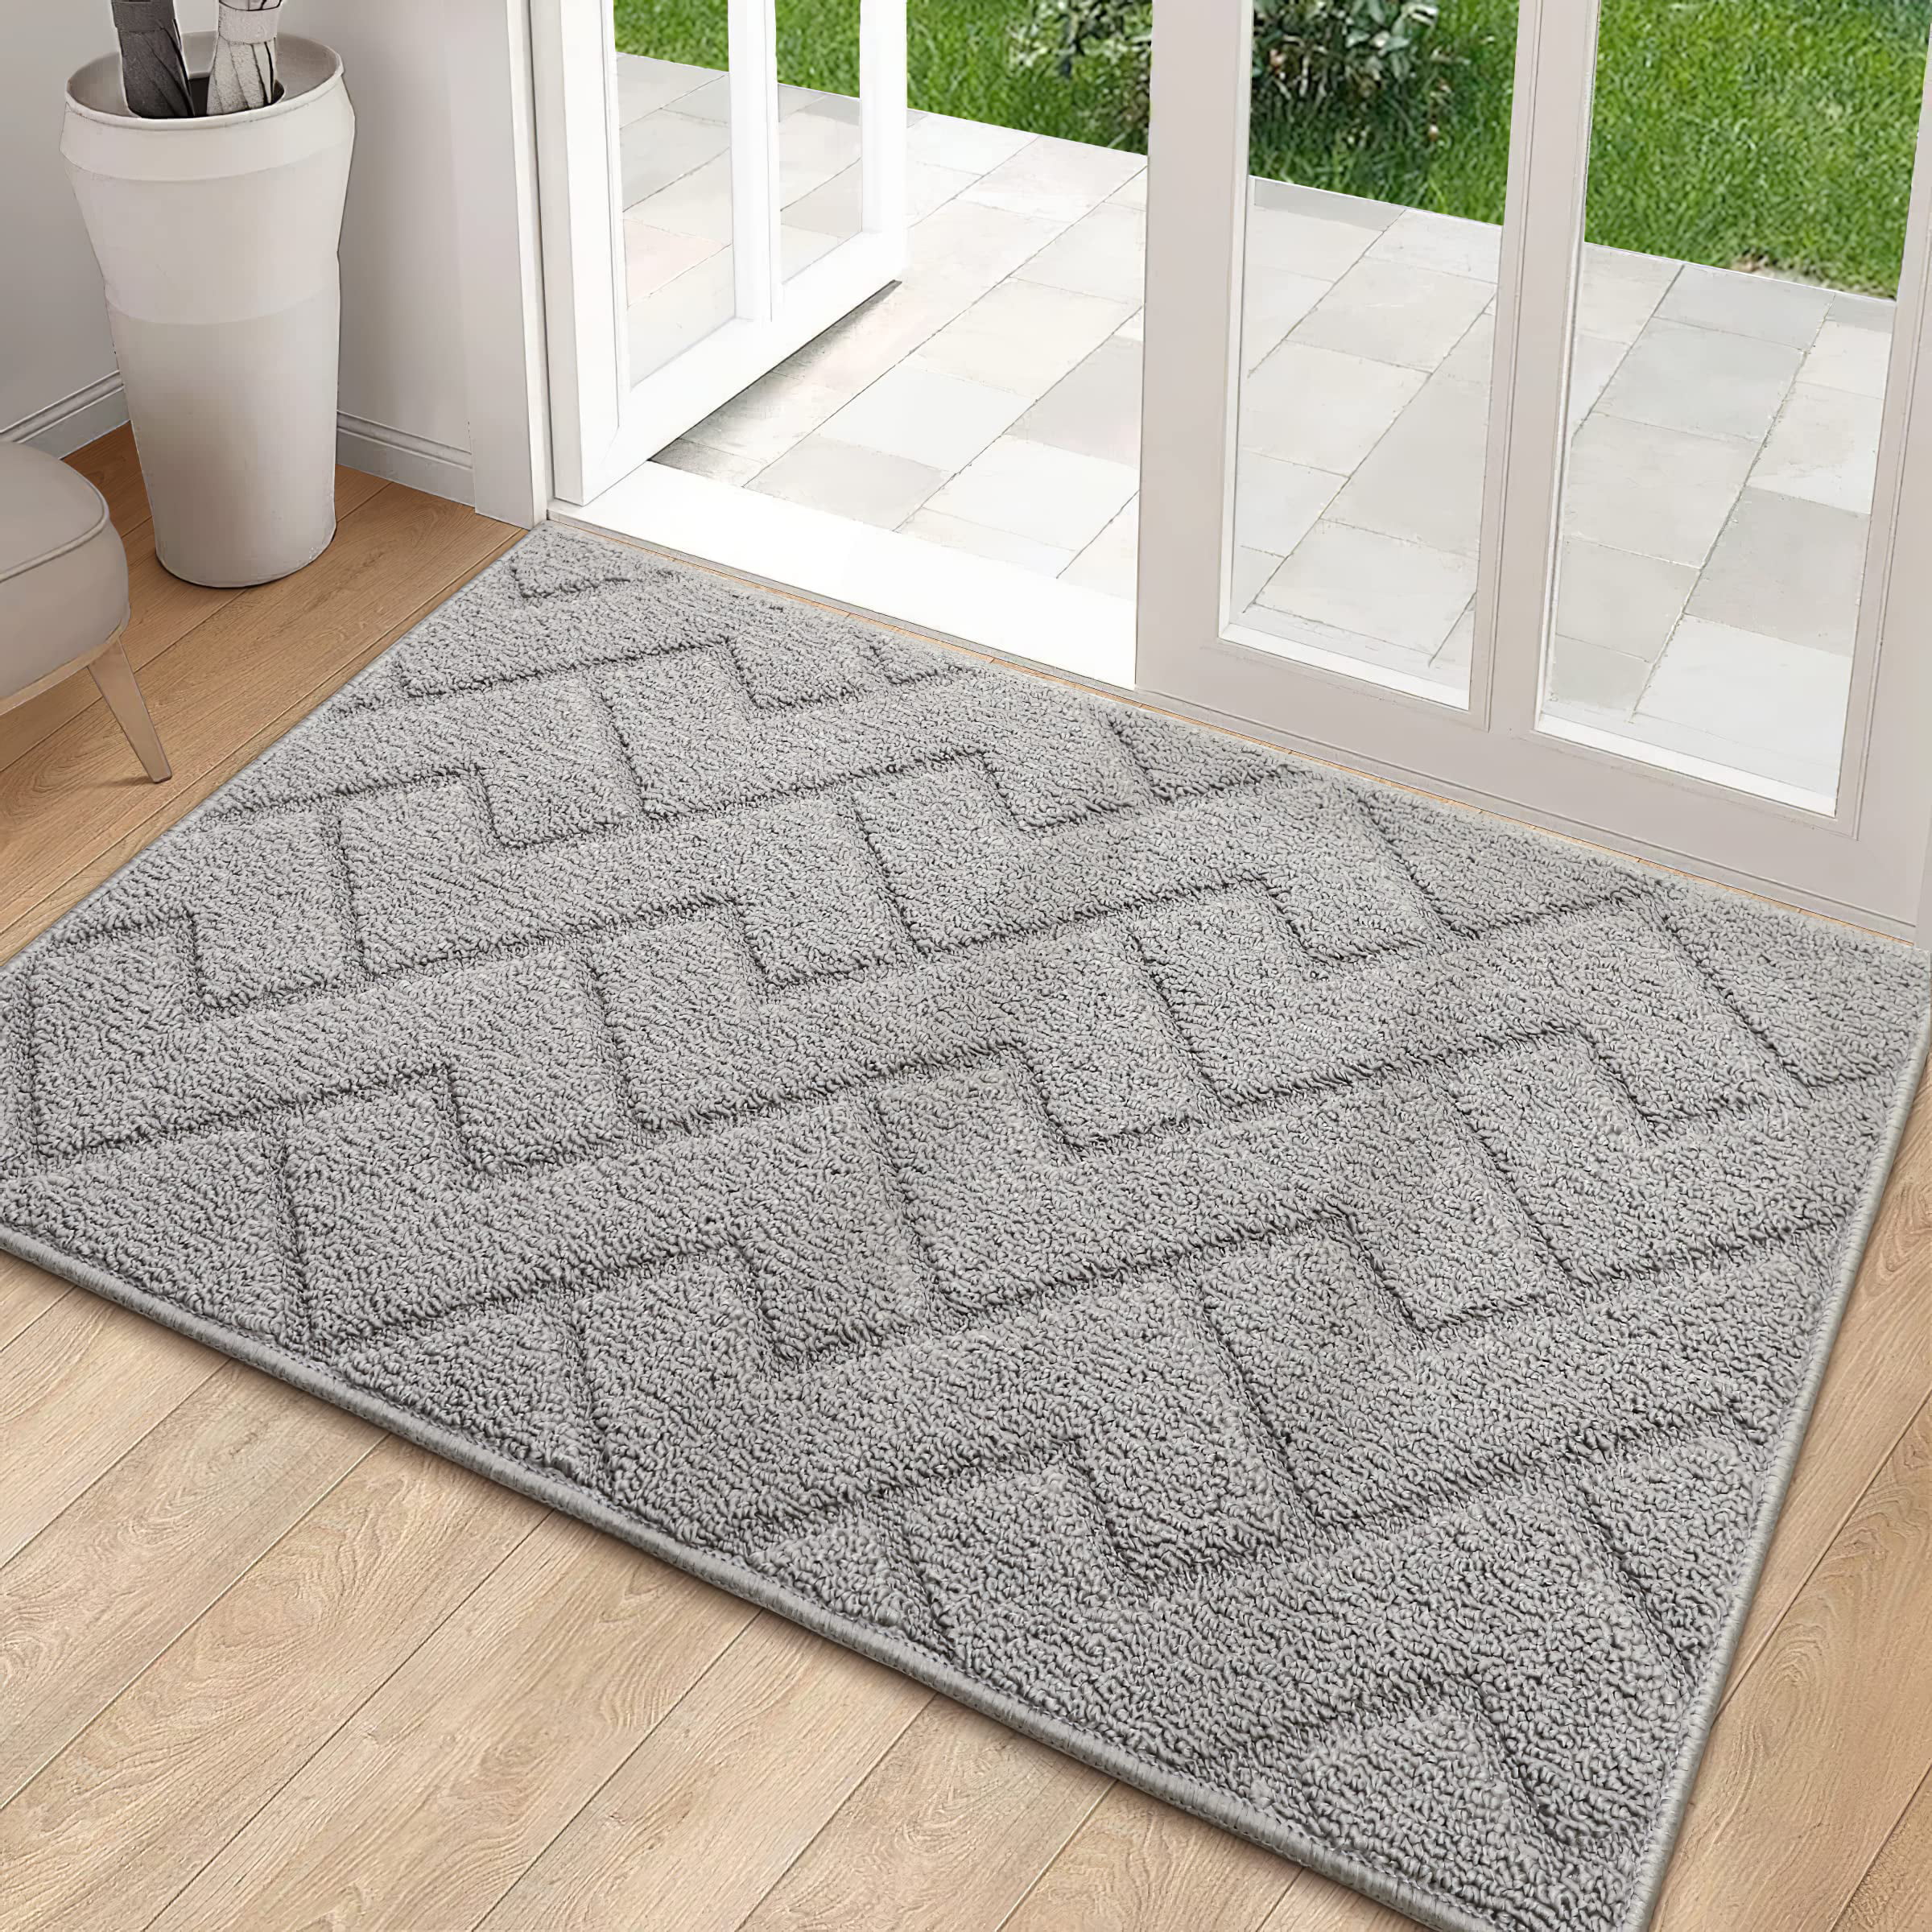 hicorfe Indoor Doormat,Front Back Door Mat,Rubber Backing Non Slip Door  Mats,32”x48”Absorbent Resist Dirt Entrance Inside Floor Mats for